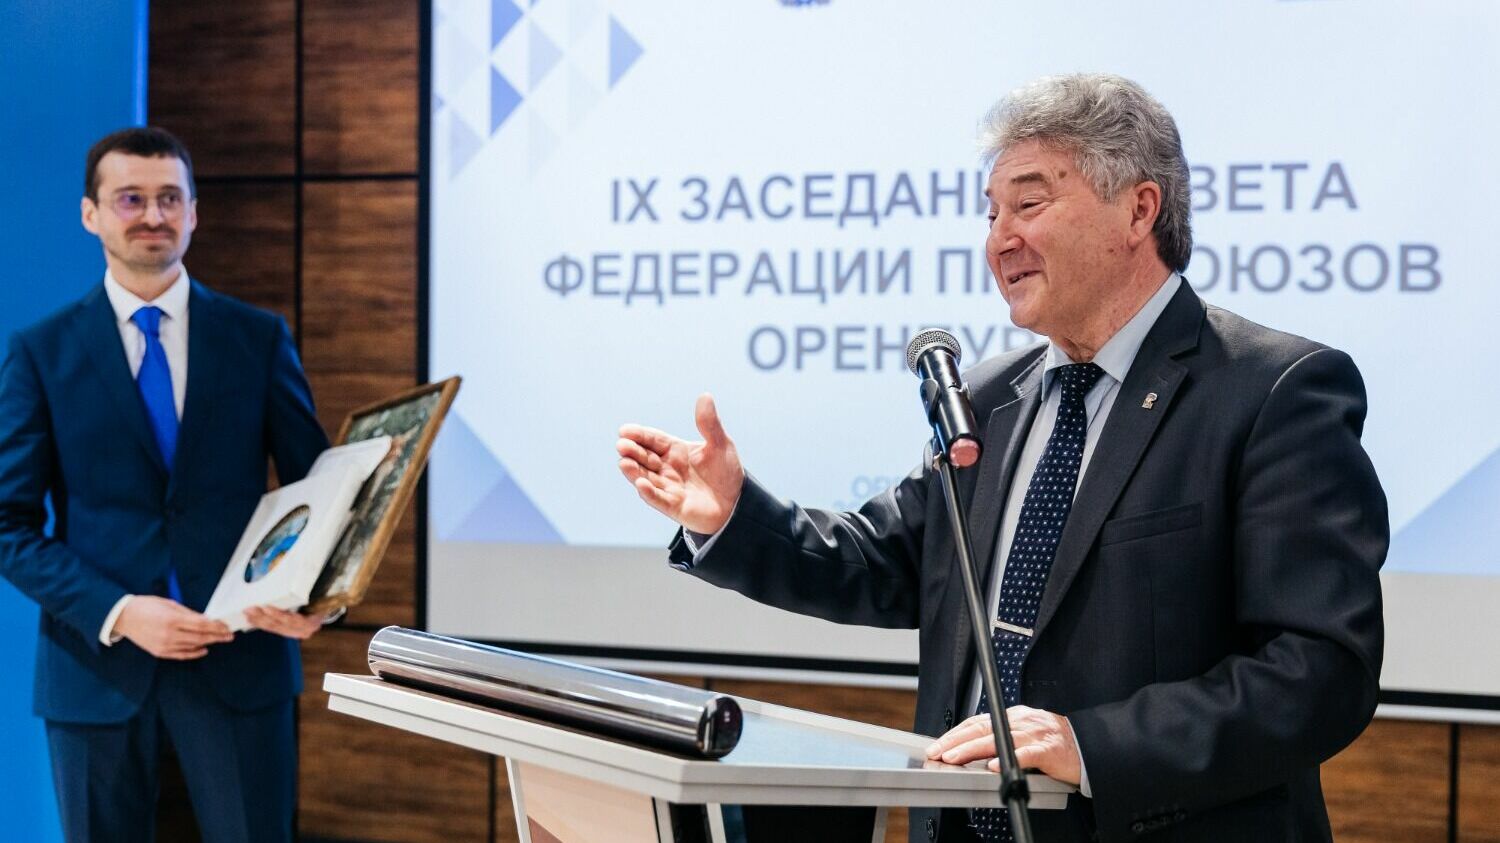 Андрей Уразгильдеев выступает с докладом